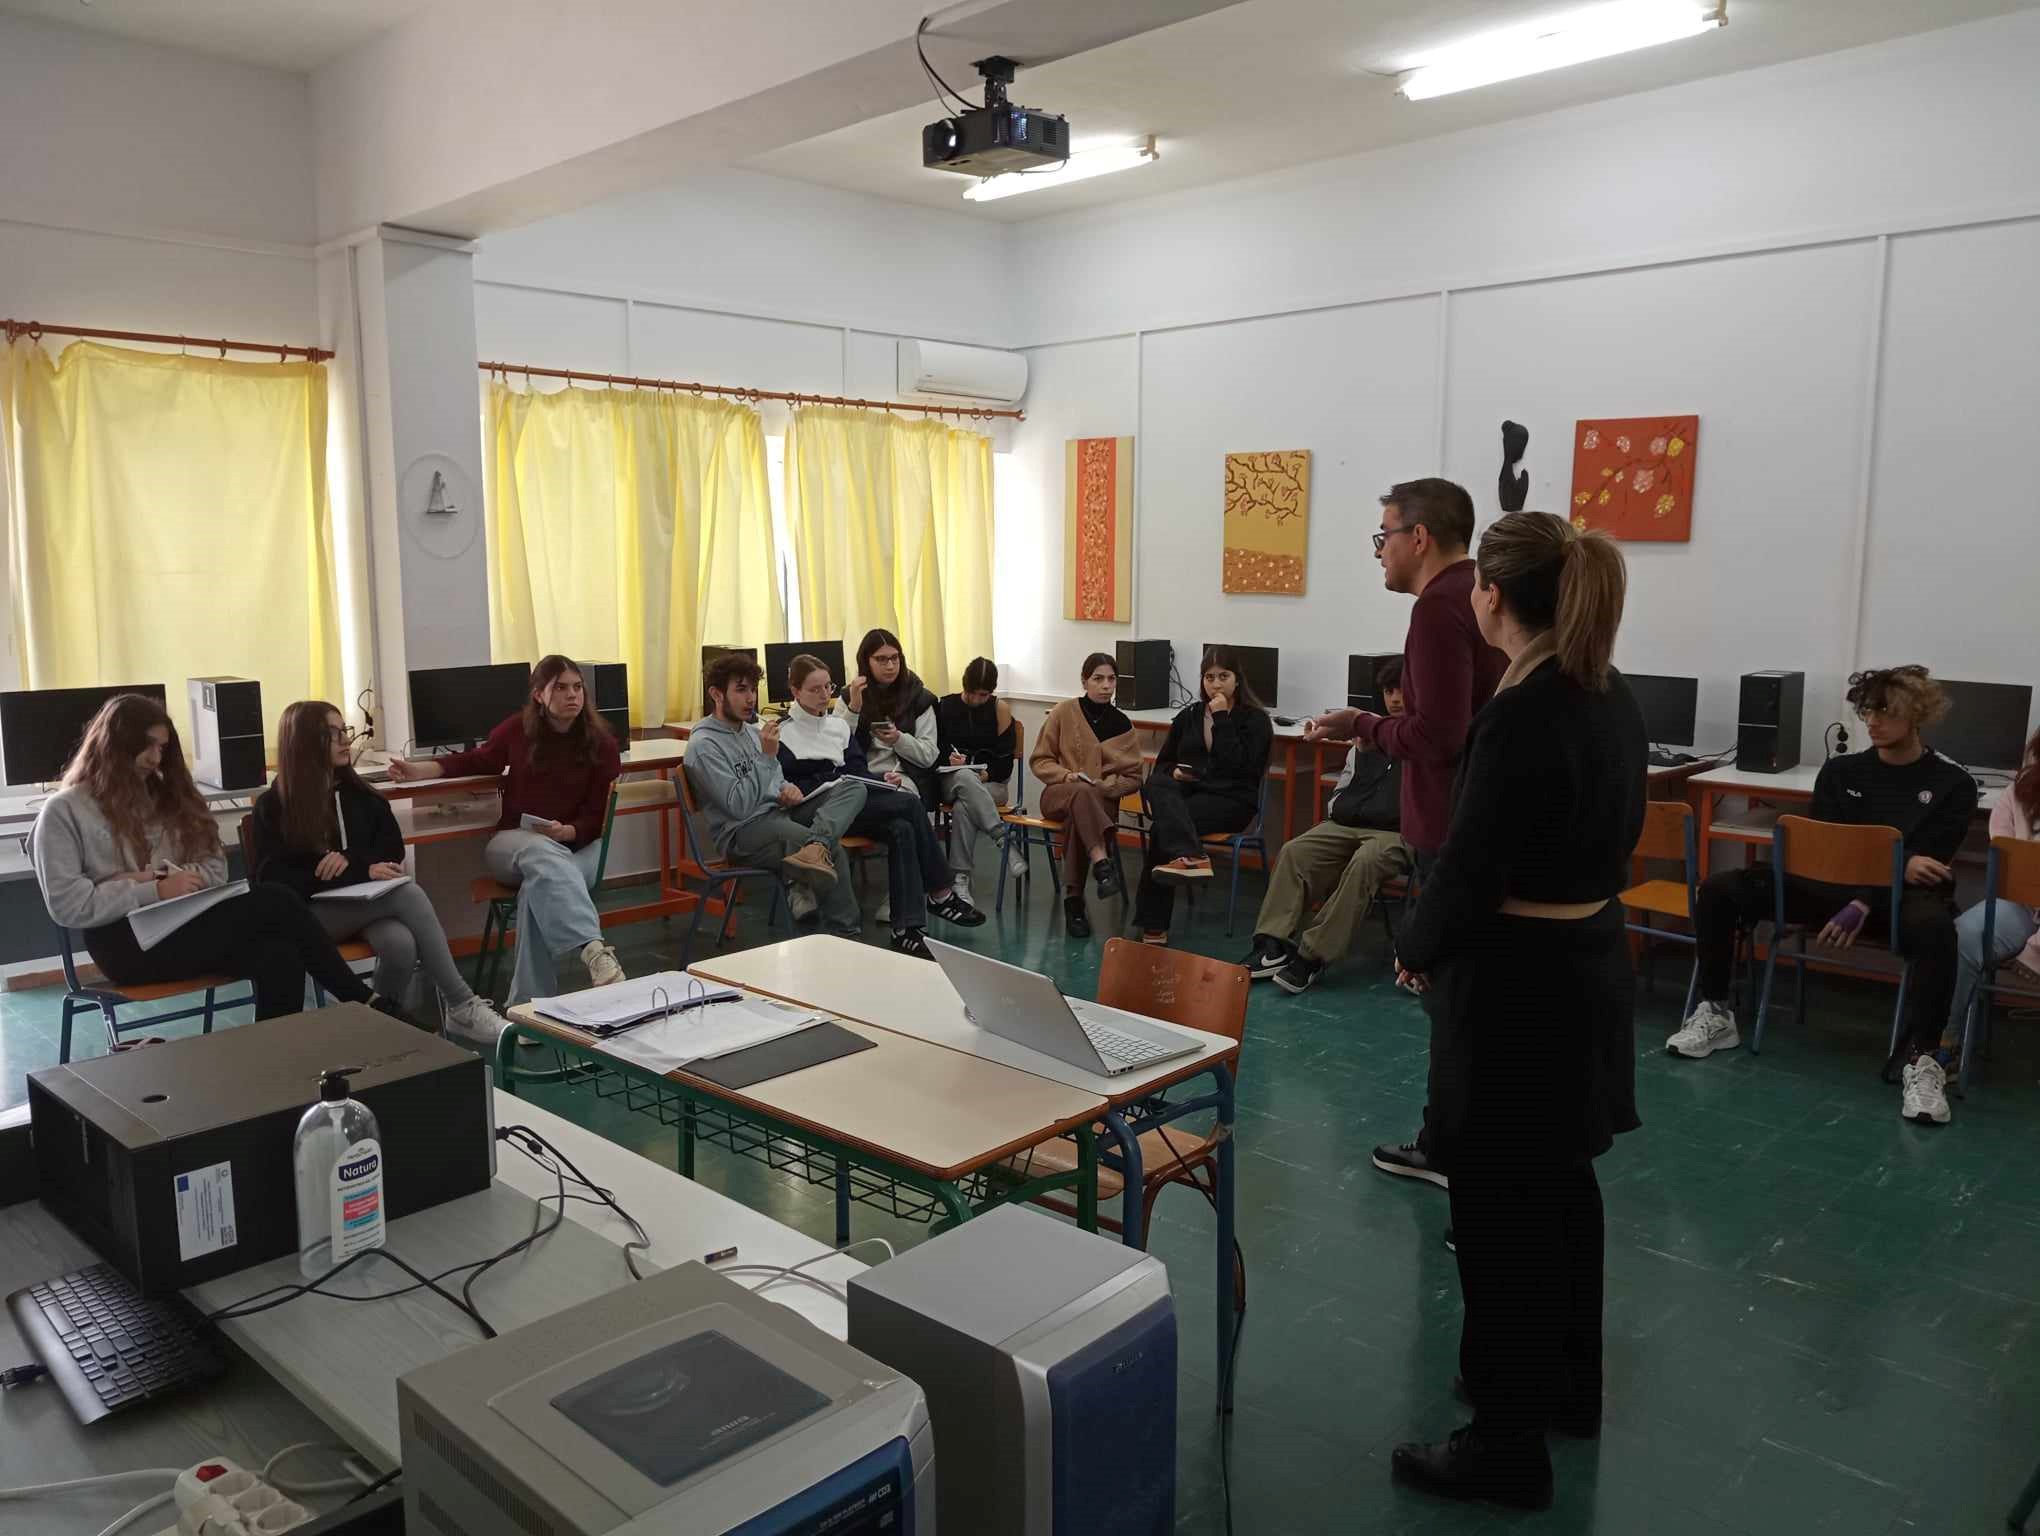 Επιμορφωτική δράση για την ενημέρωση και την προετοιμασία των μαθητών σχετικά με τον ποιητικό διαγωνισμό «Νίκος Γκάτσος, ο ποιητής των στίχων»